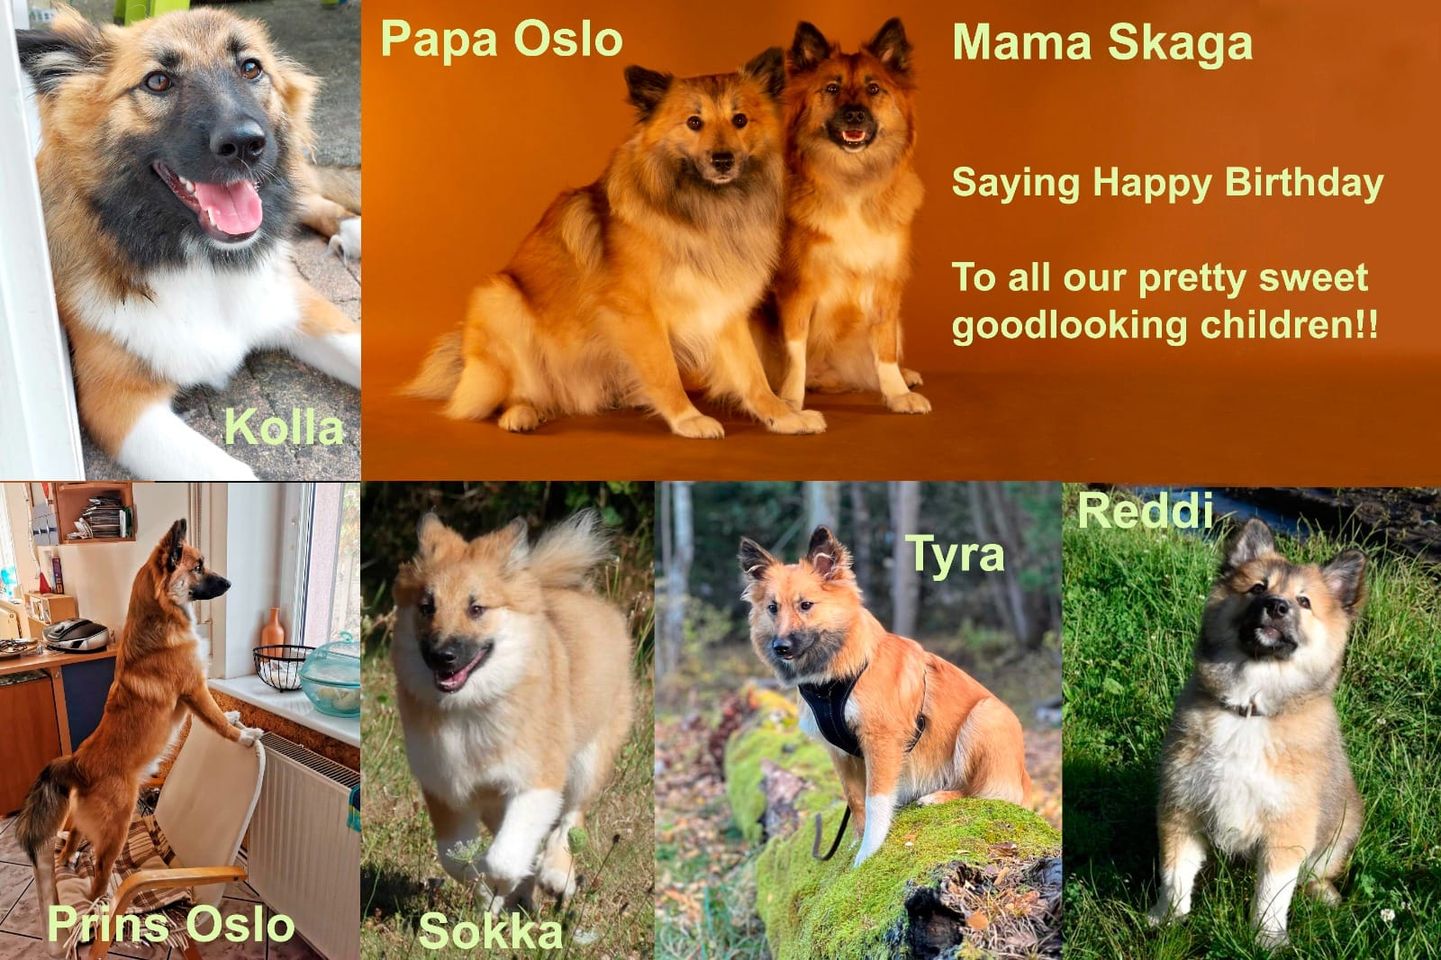 Verjaardag pups Oslo en Skaga, IJslandse Honden van kennel Fráhálendi.